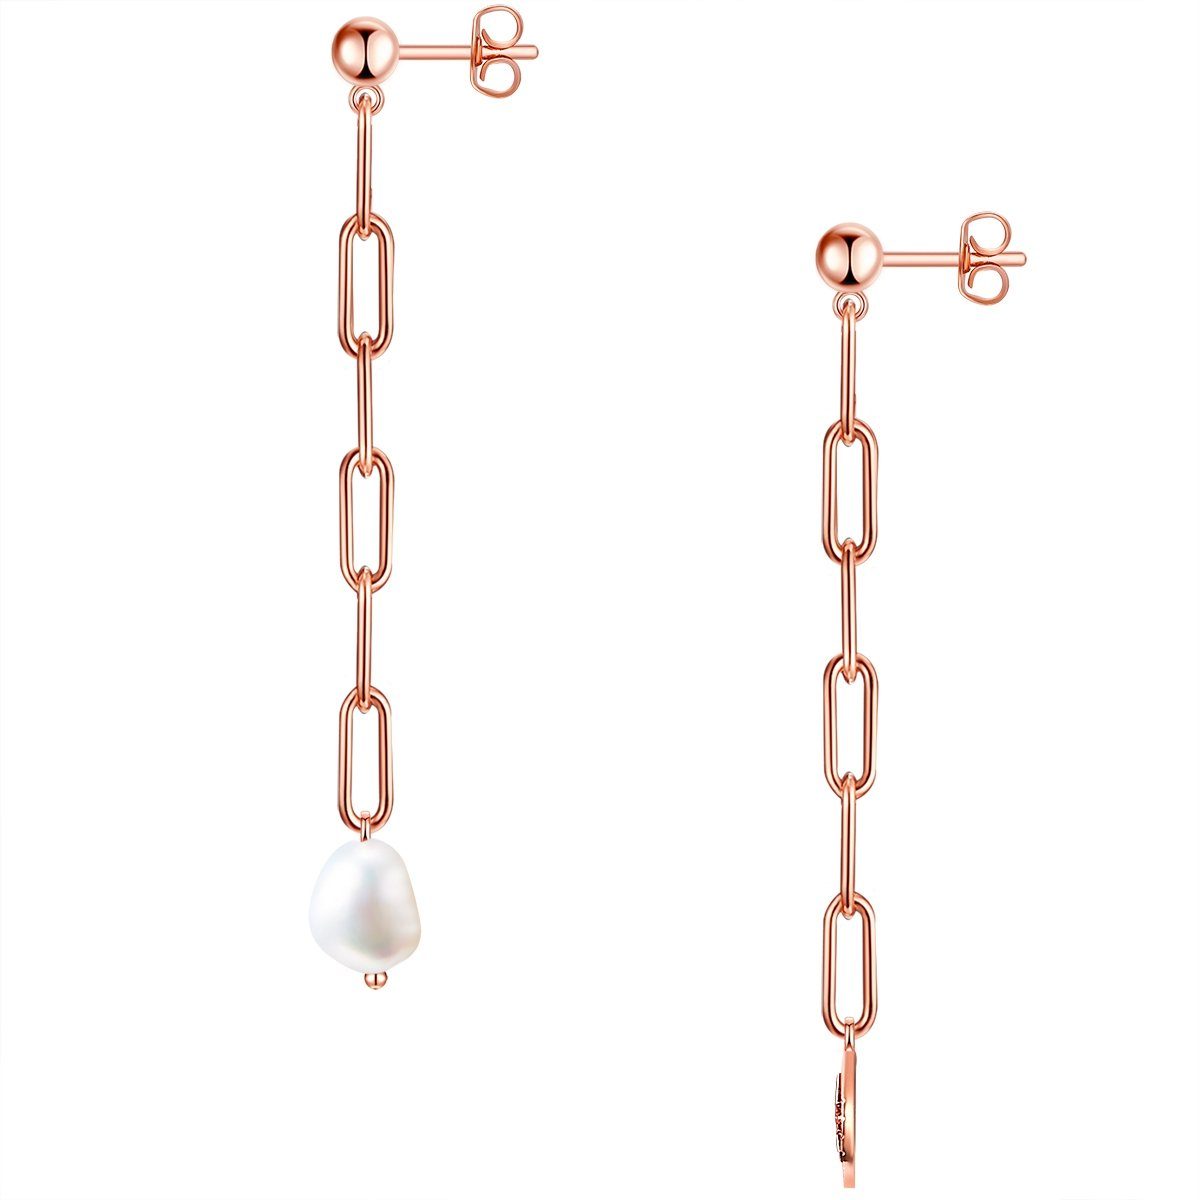 Damen Schmuck Valero Pearls Paar Ohrhänger roségold (kein Set), mit Süßwasser-Zuchtperle